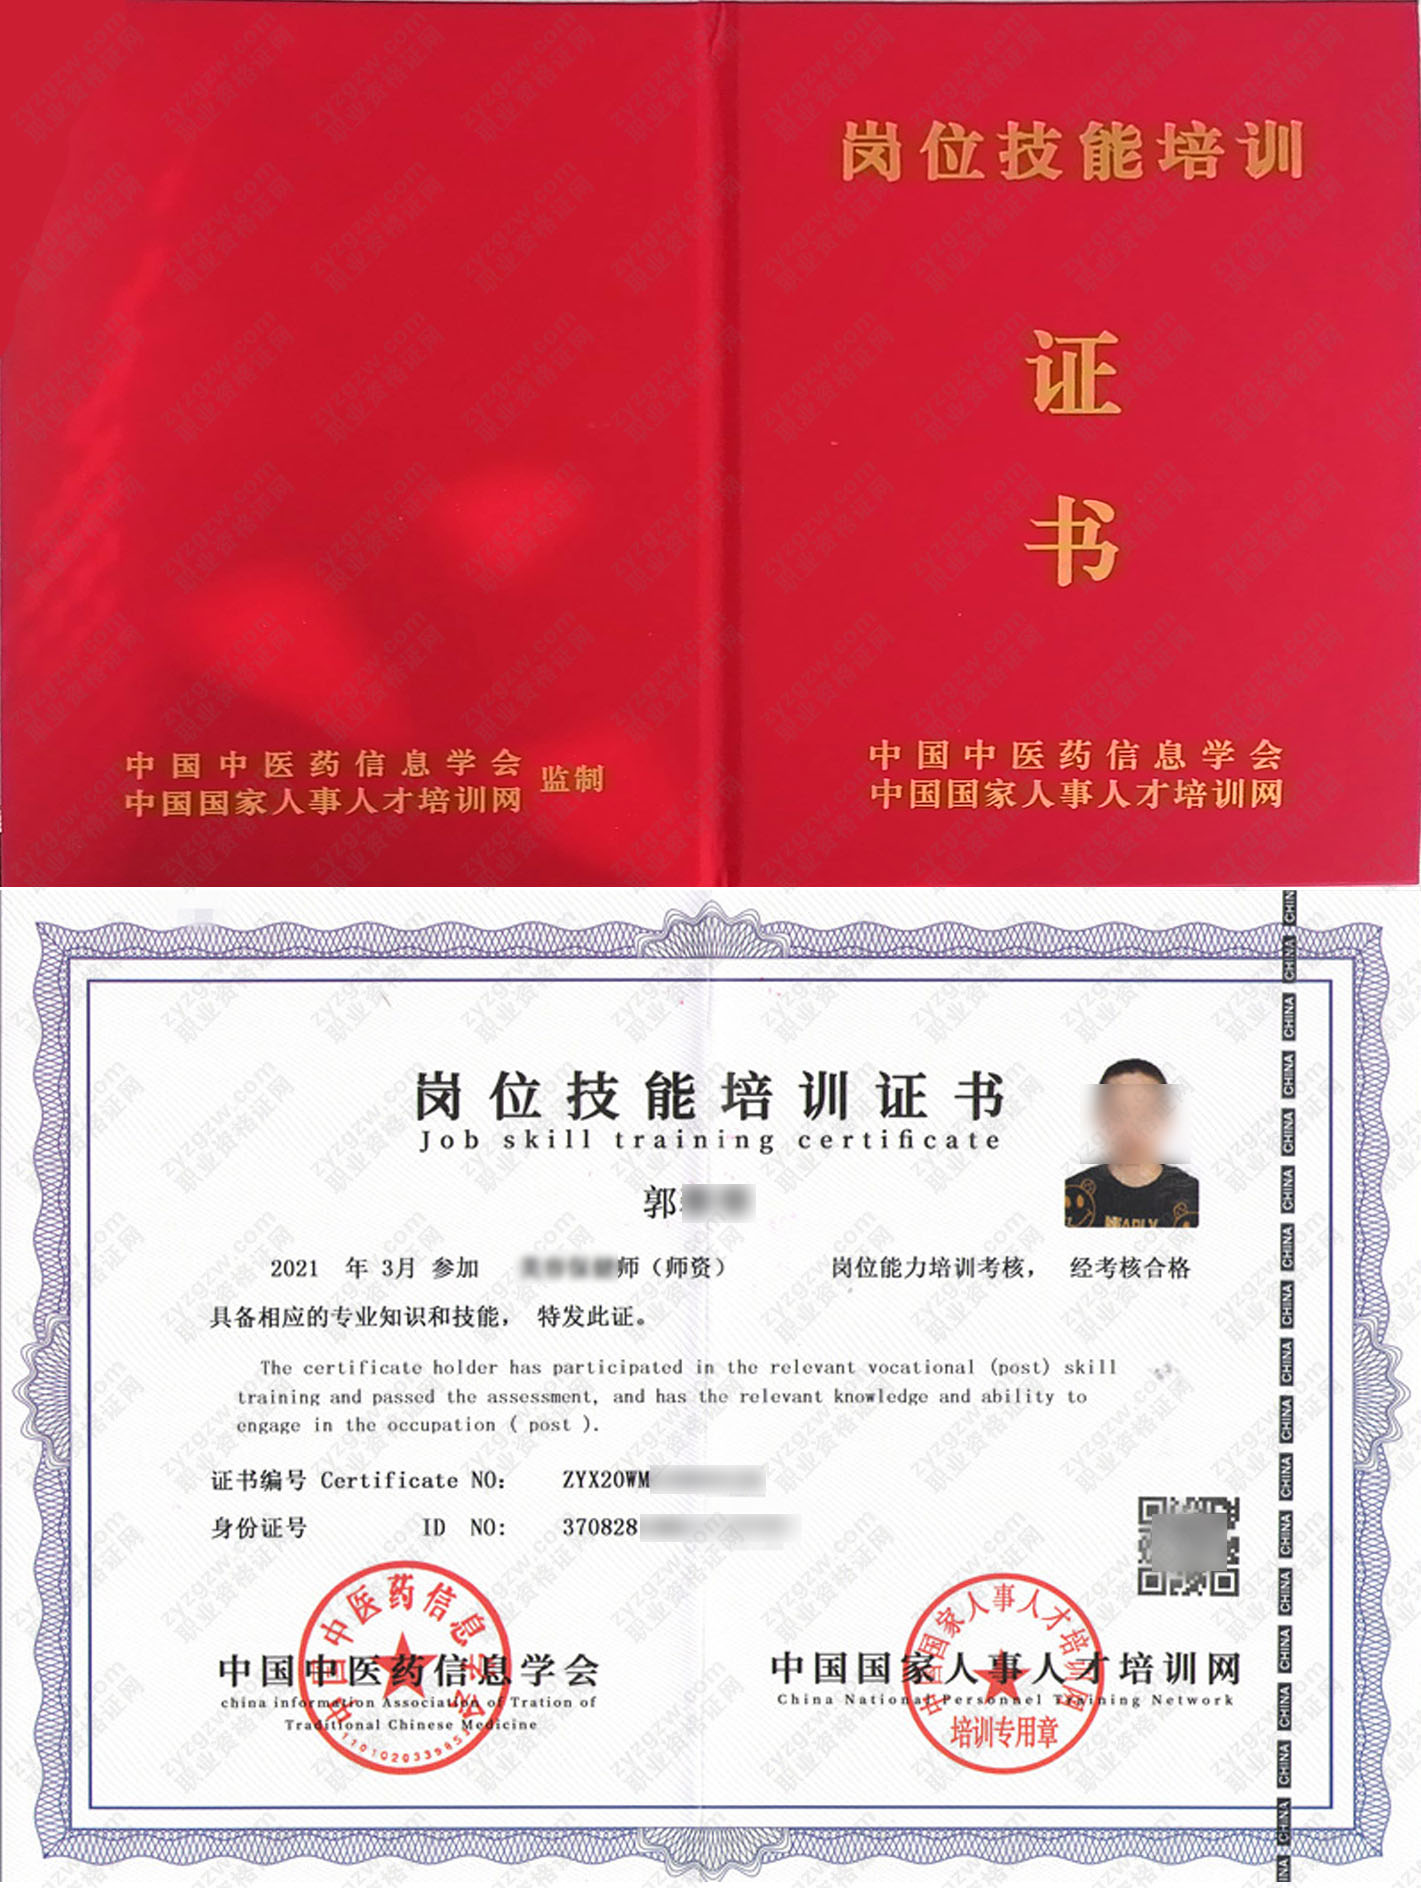 中国国家人事人才培训网 病患照护师 岗位技能培训证书